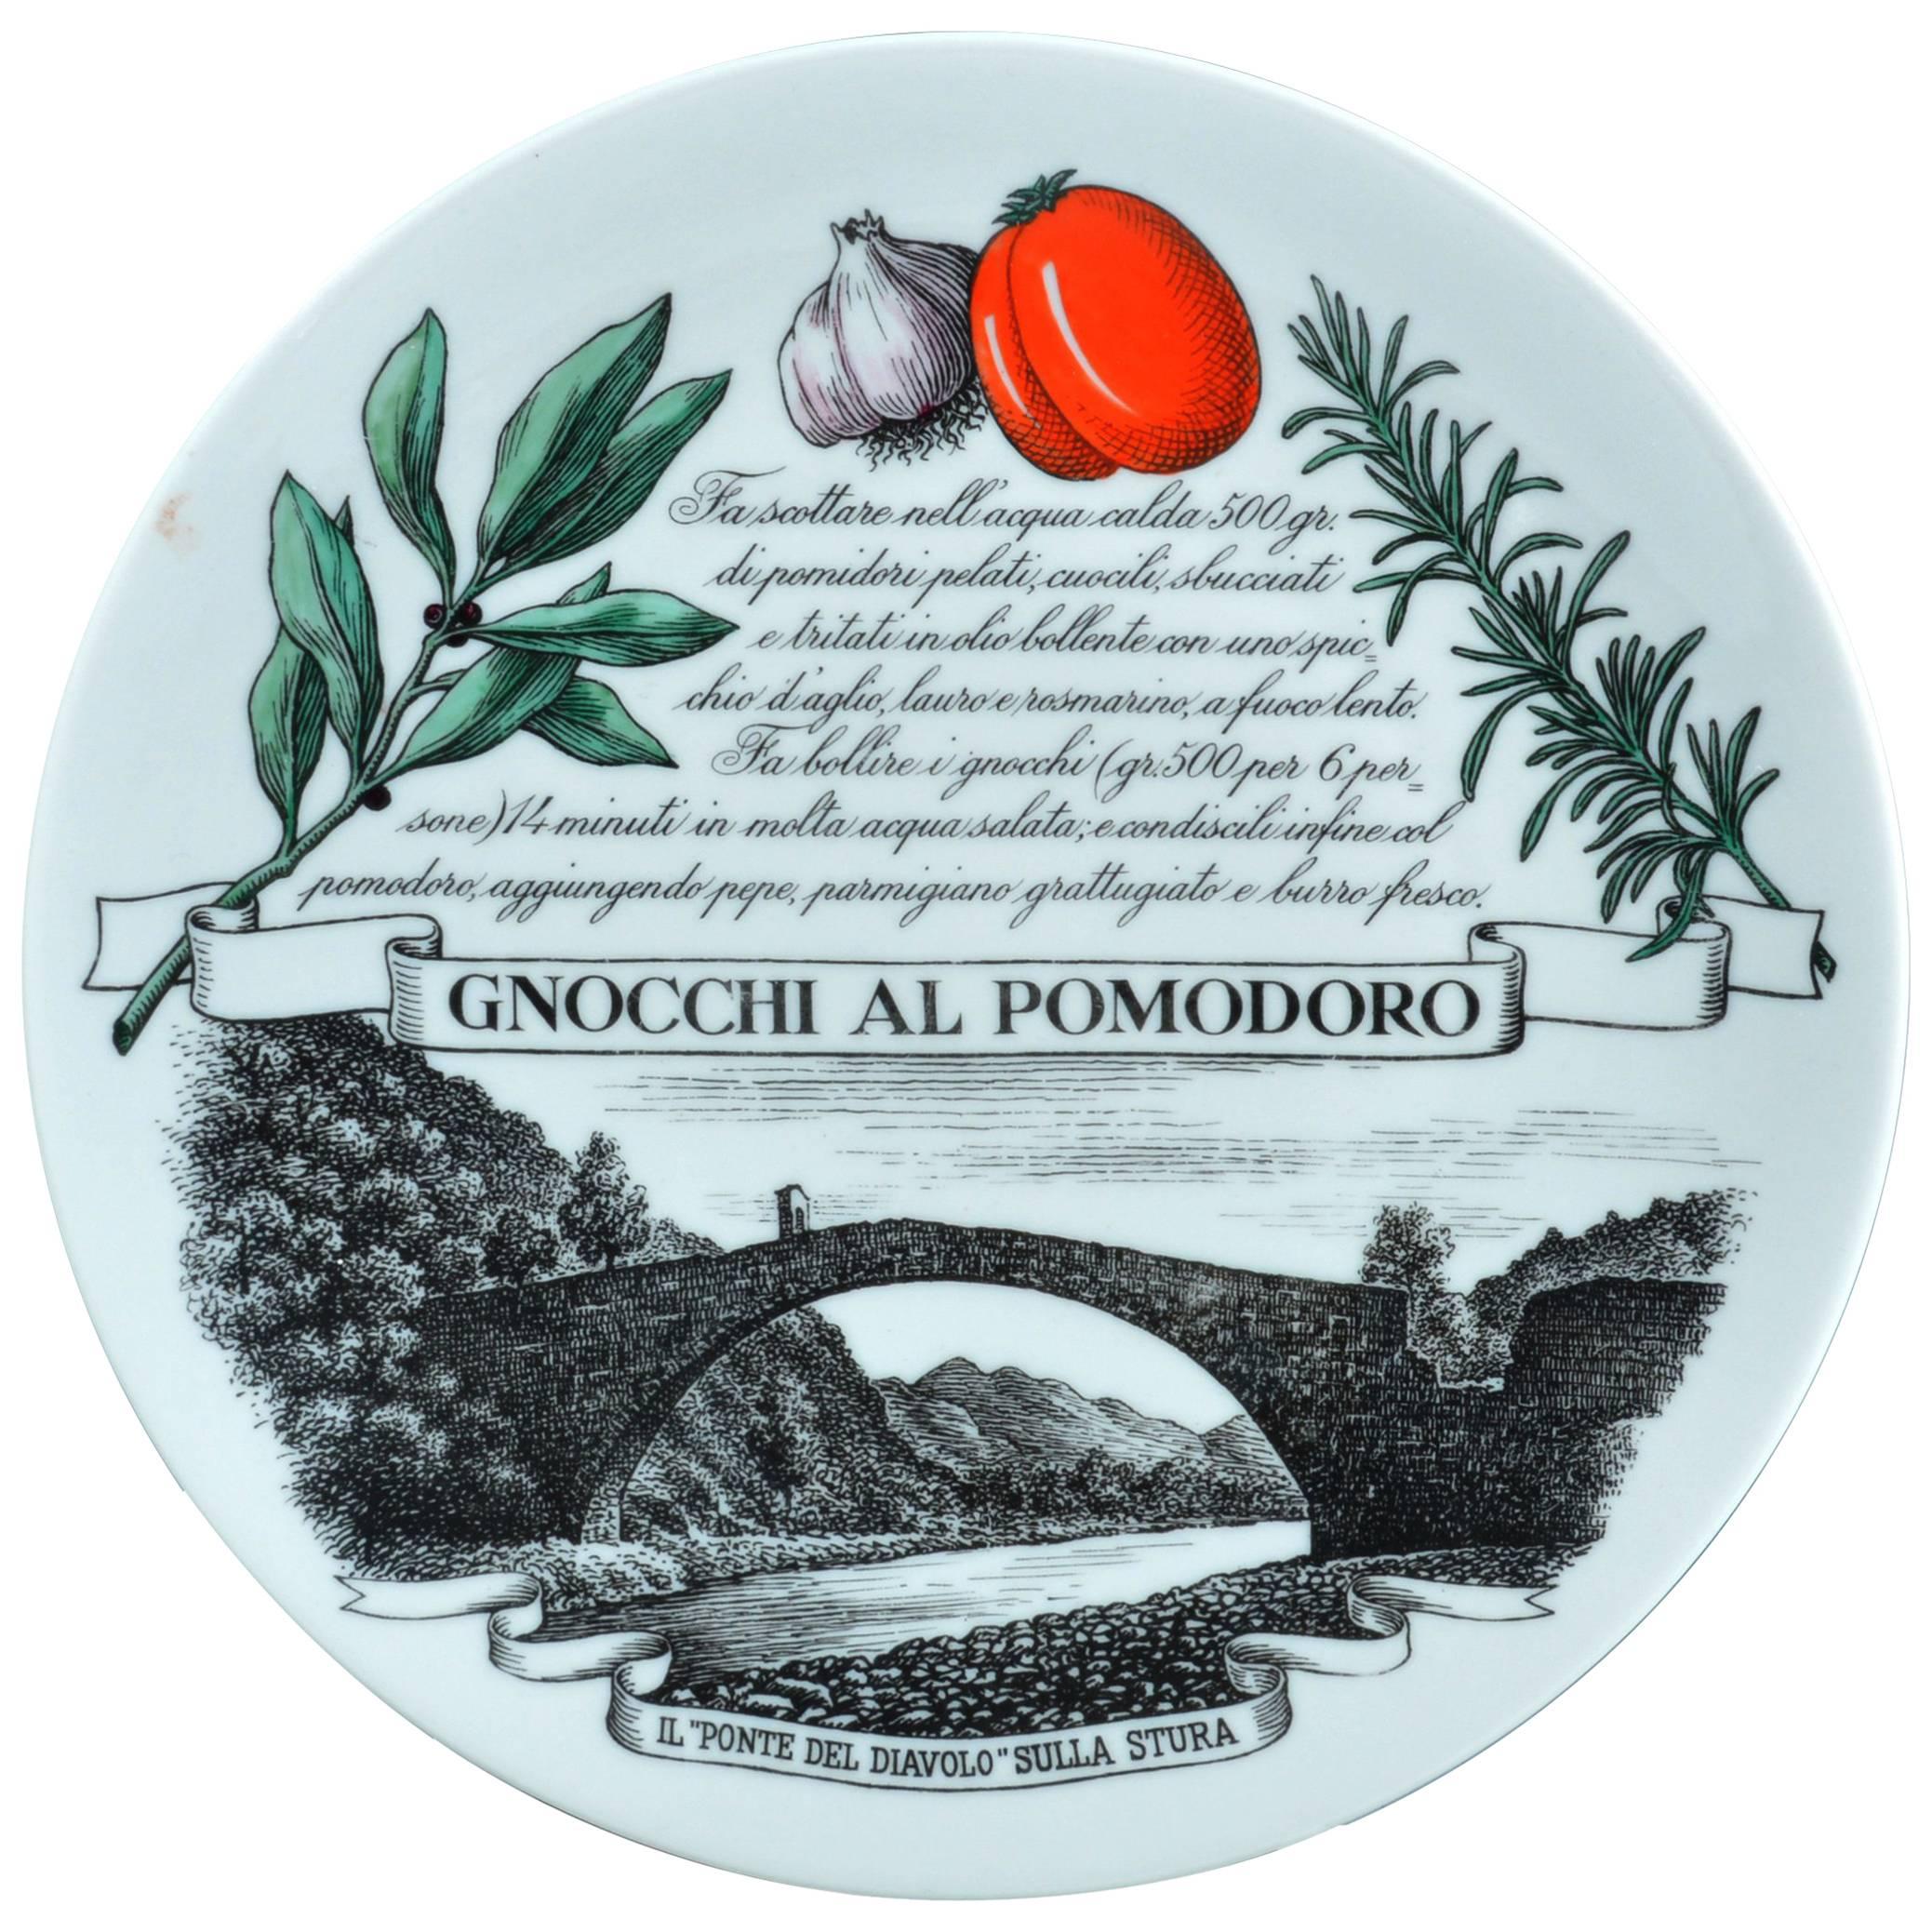 Piero Fornasetti Recipe Plate Piatti Tipici #1, Gnocchi Al Pomodoro, 1971